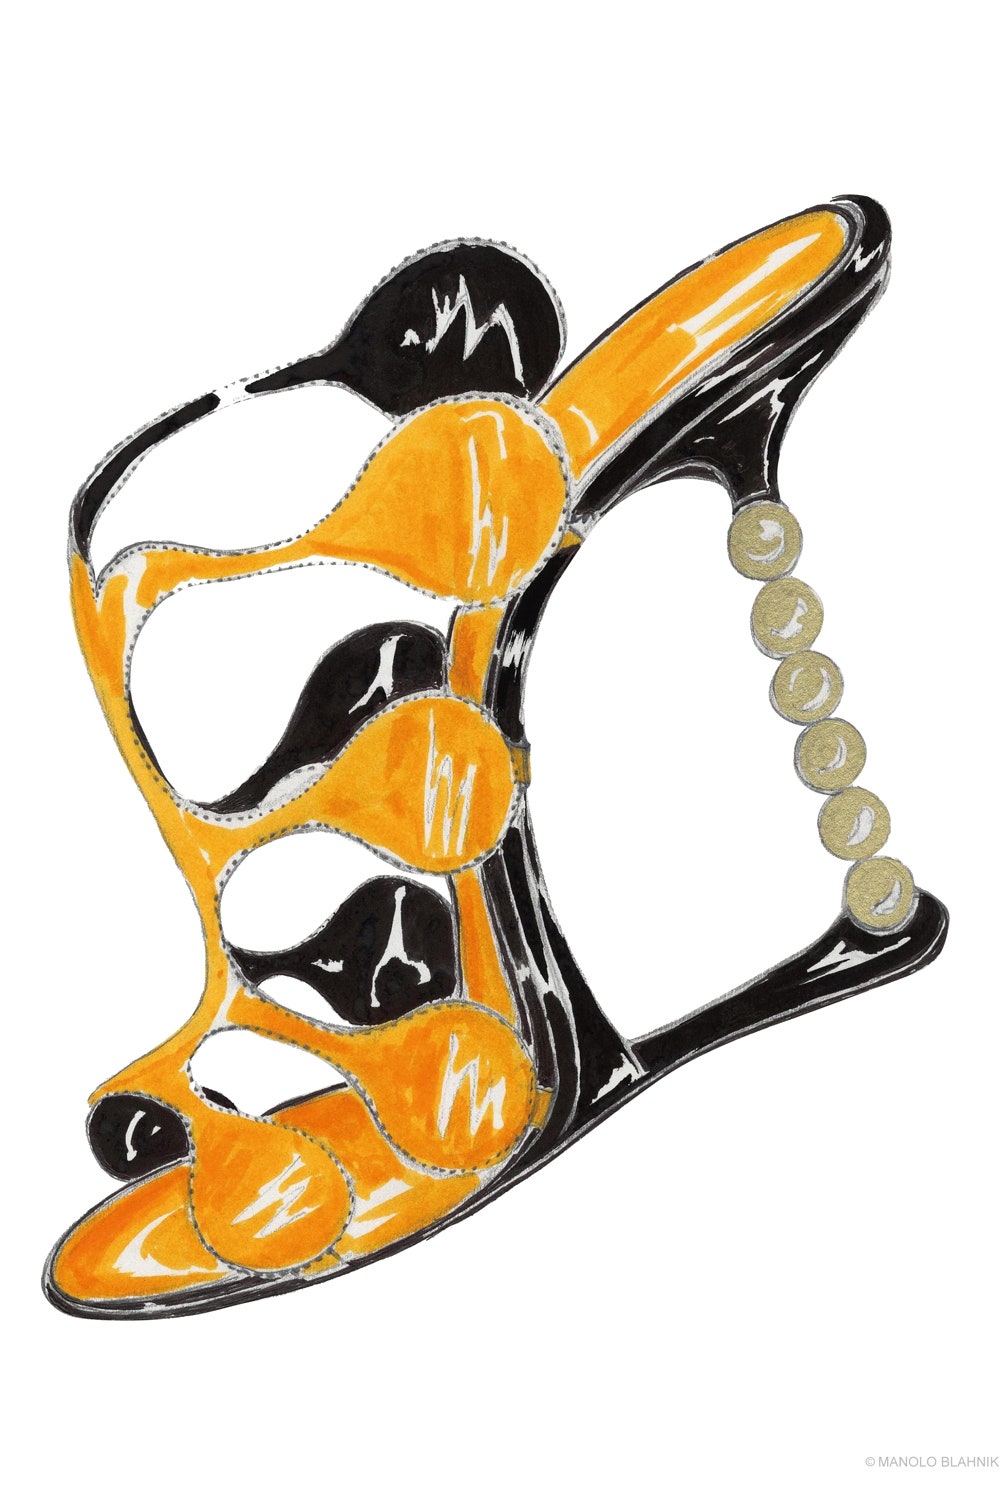 Раскраска с обувью Маноло Бланика — лучшее офлайнразвлечение